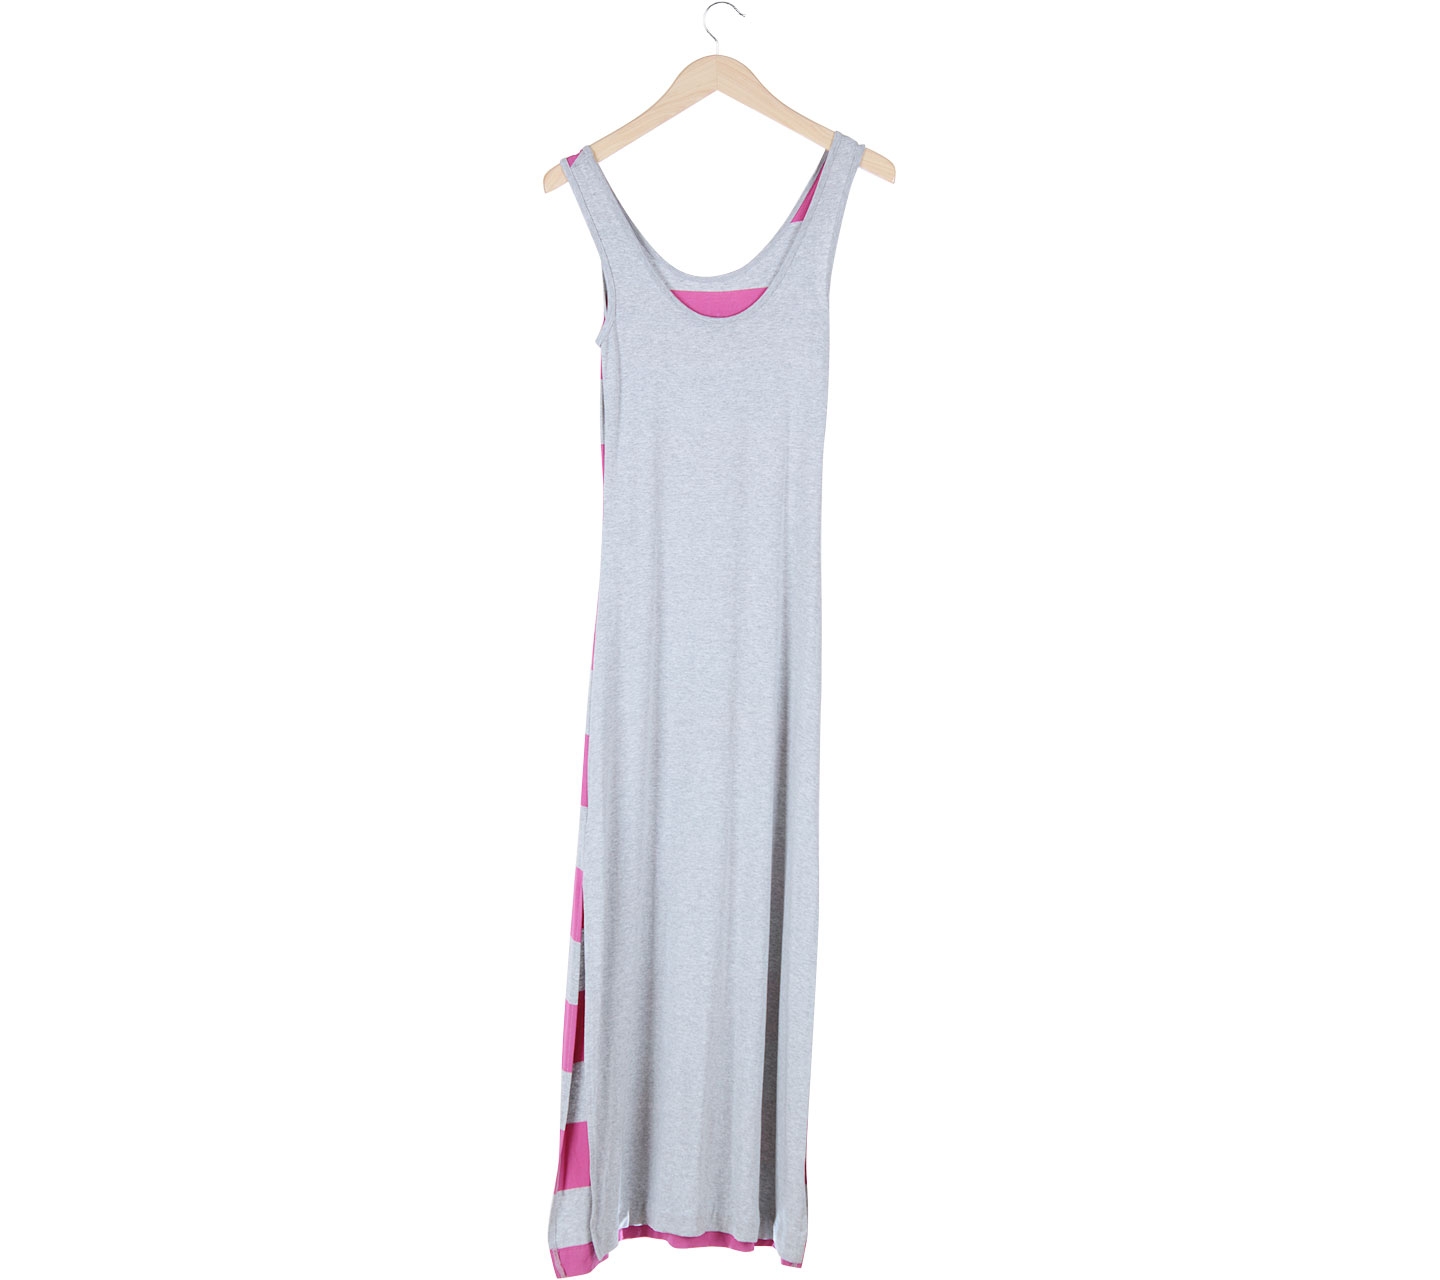 Bebe Grey And Pink Sleeveless Long Dress